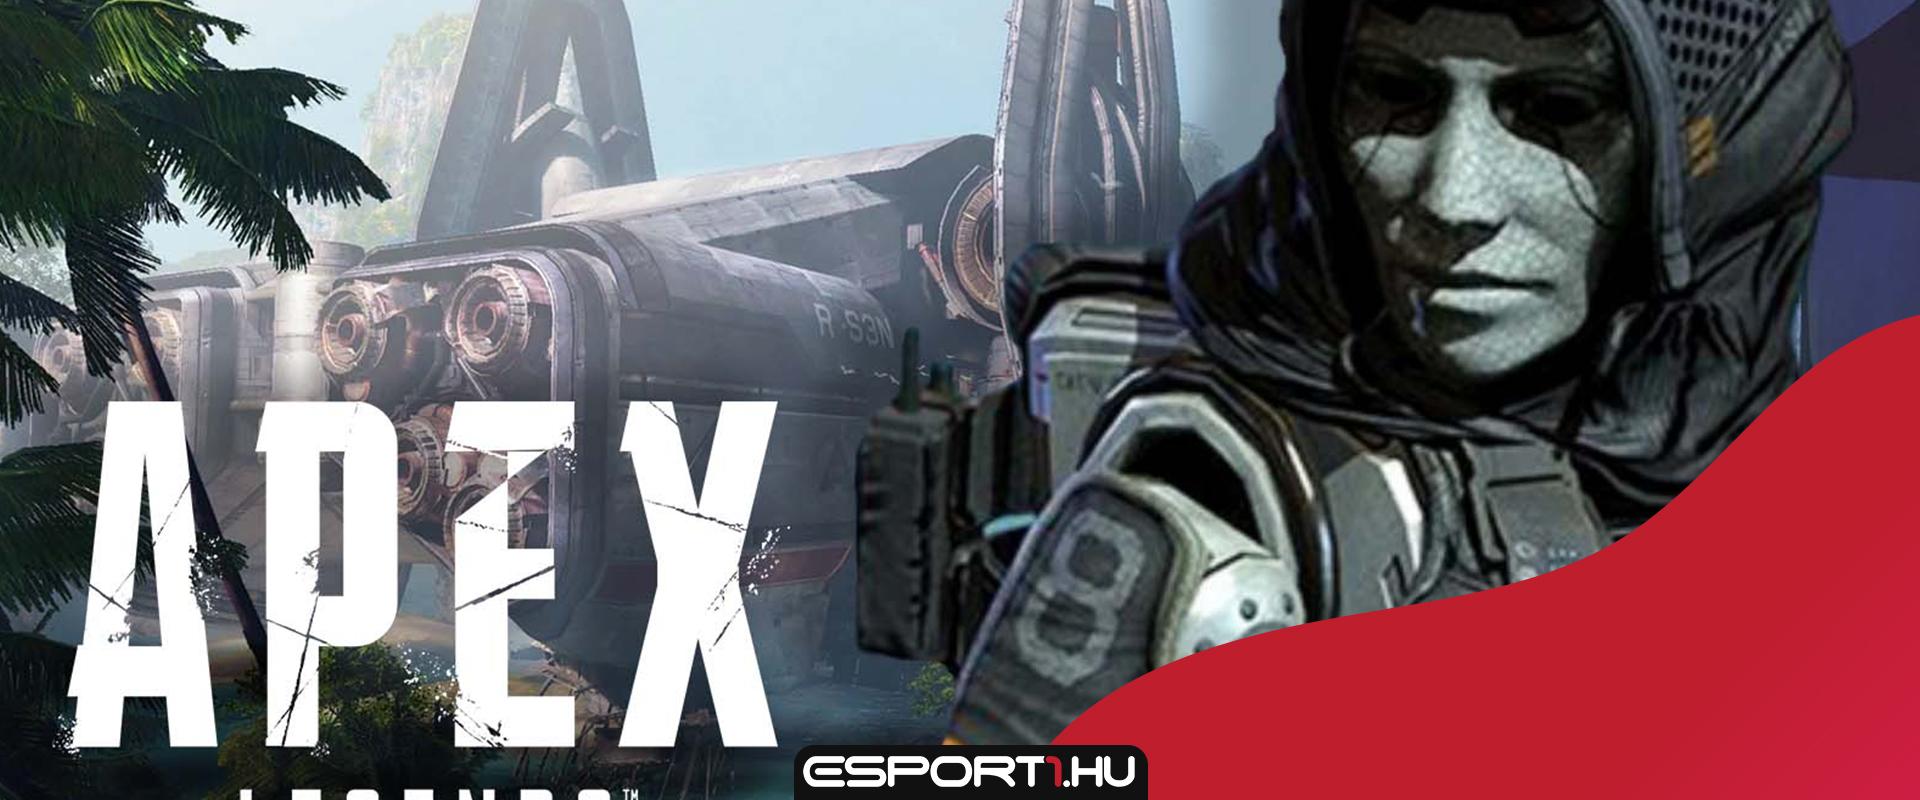 Bejelentették az Apex Legends 11. kompetitív szezonját